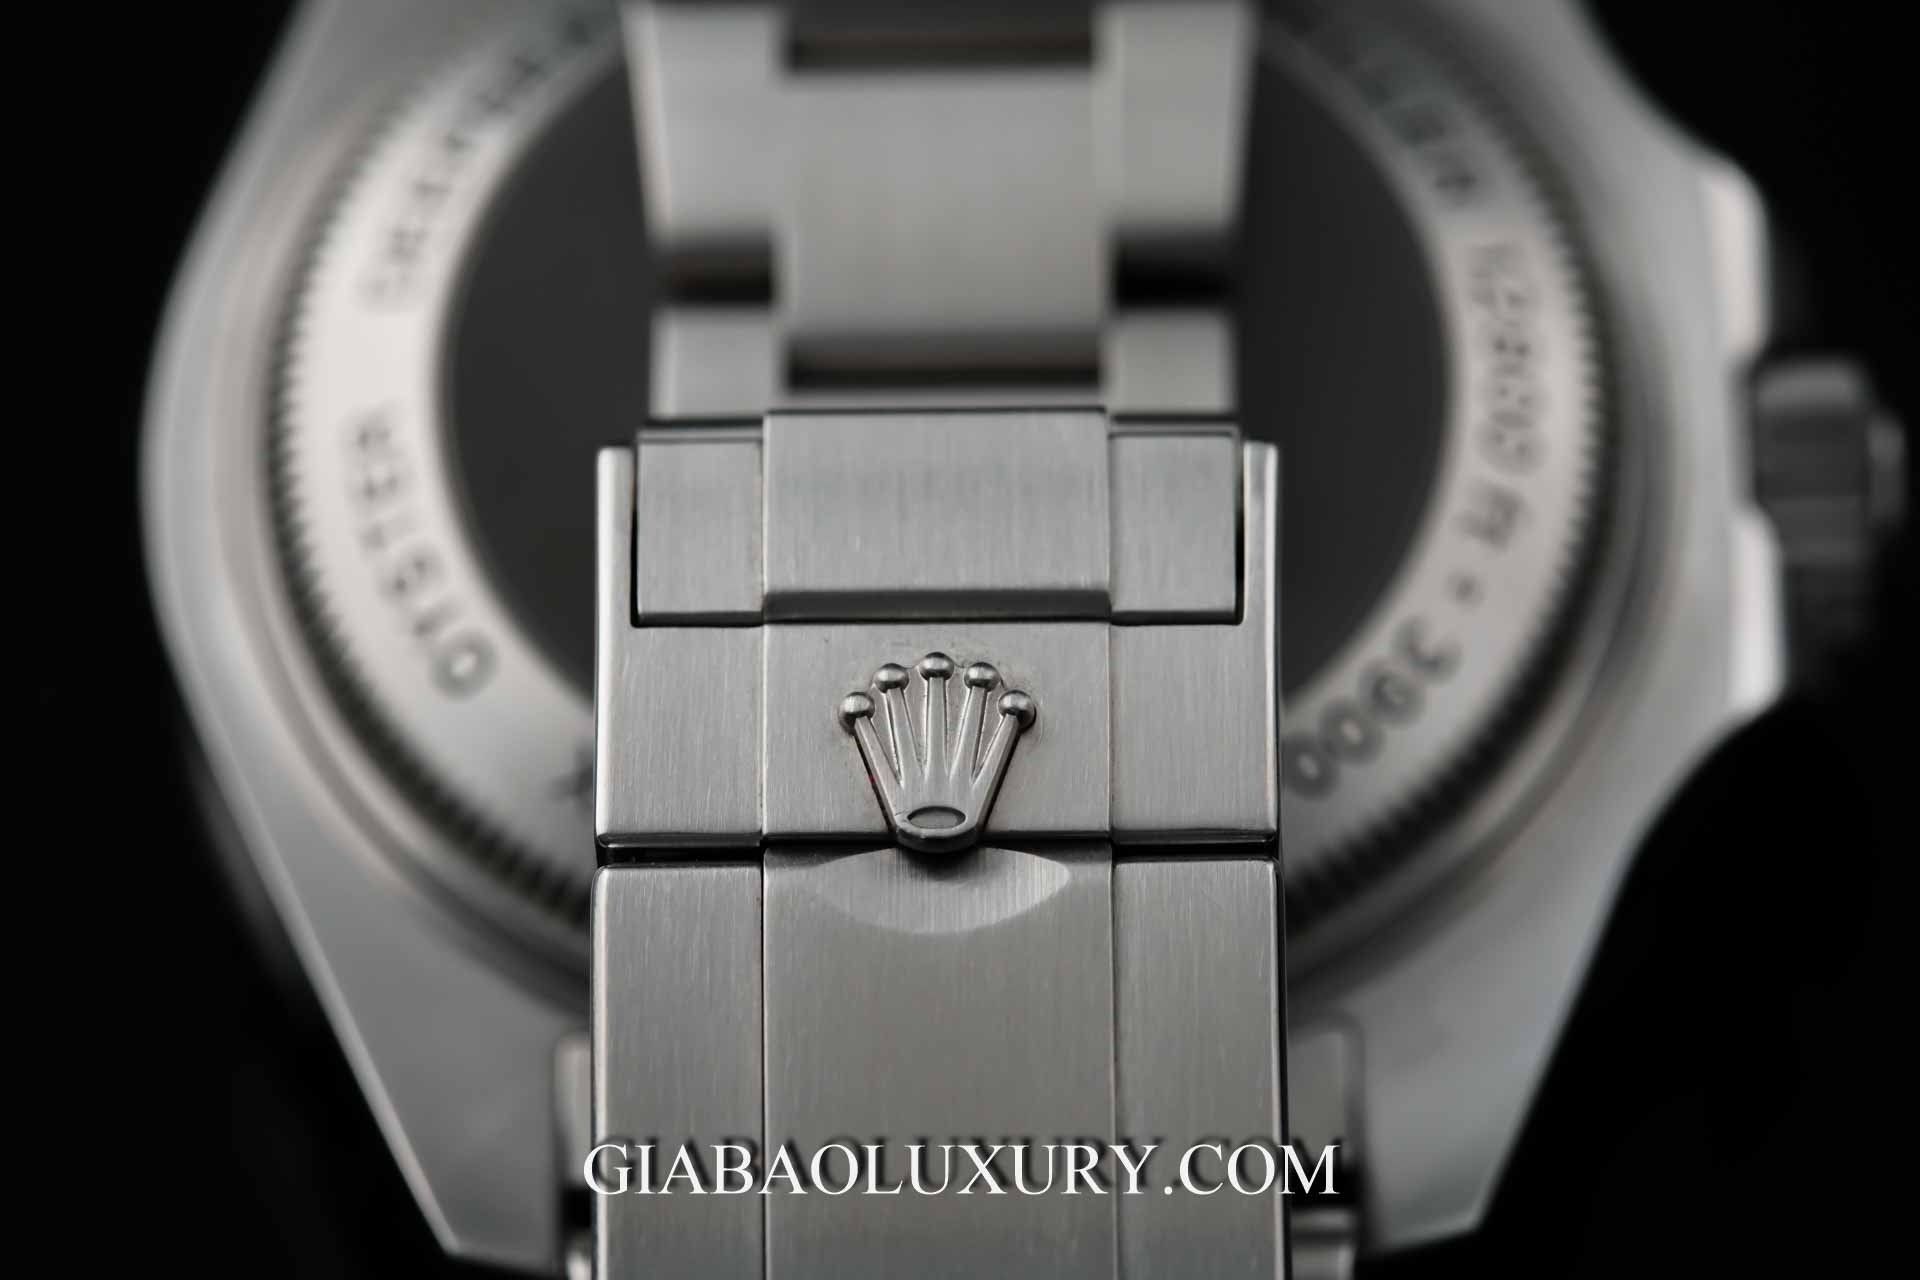 Review đồng hồ Rolex Sea-Dweller 116660